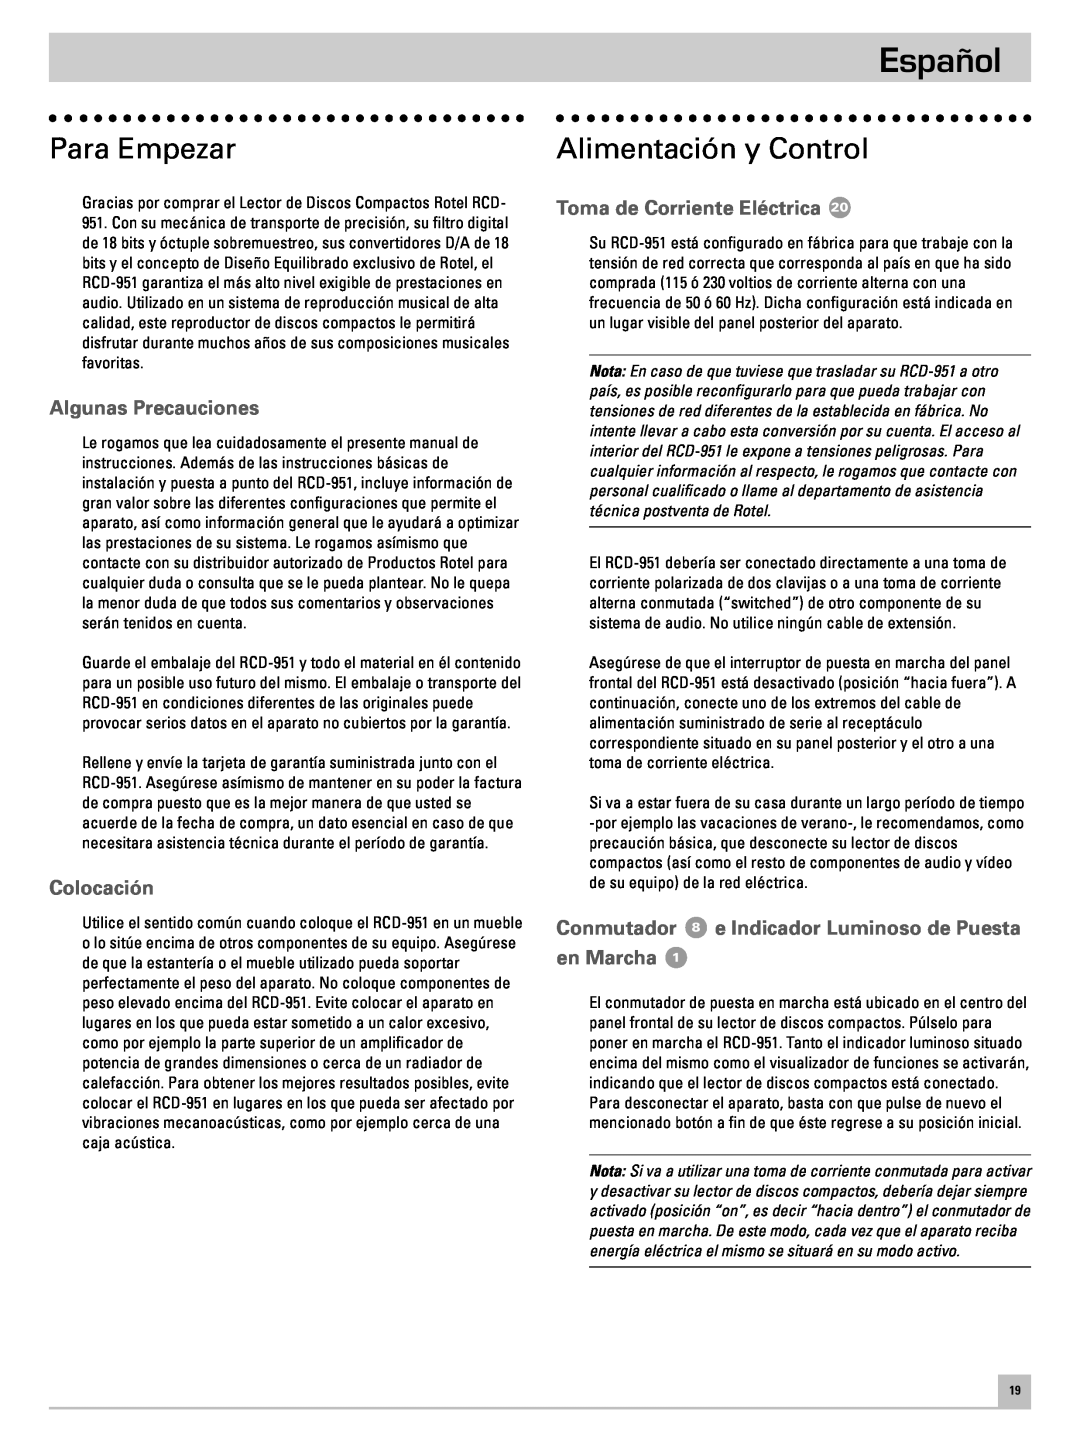 Rotel RCD-951 Español, Para Empezar, Alimentación y Control, Algunas Precauciones, Colocación, Toma de Corriente Eléctrica 